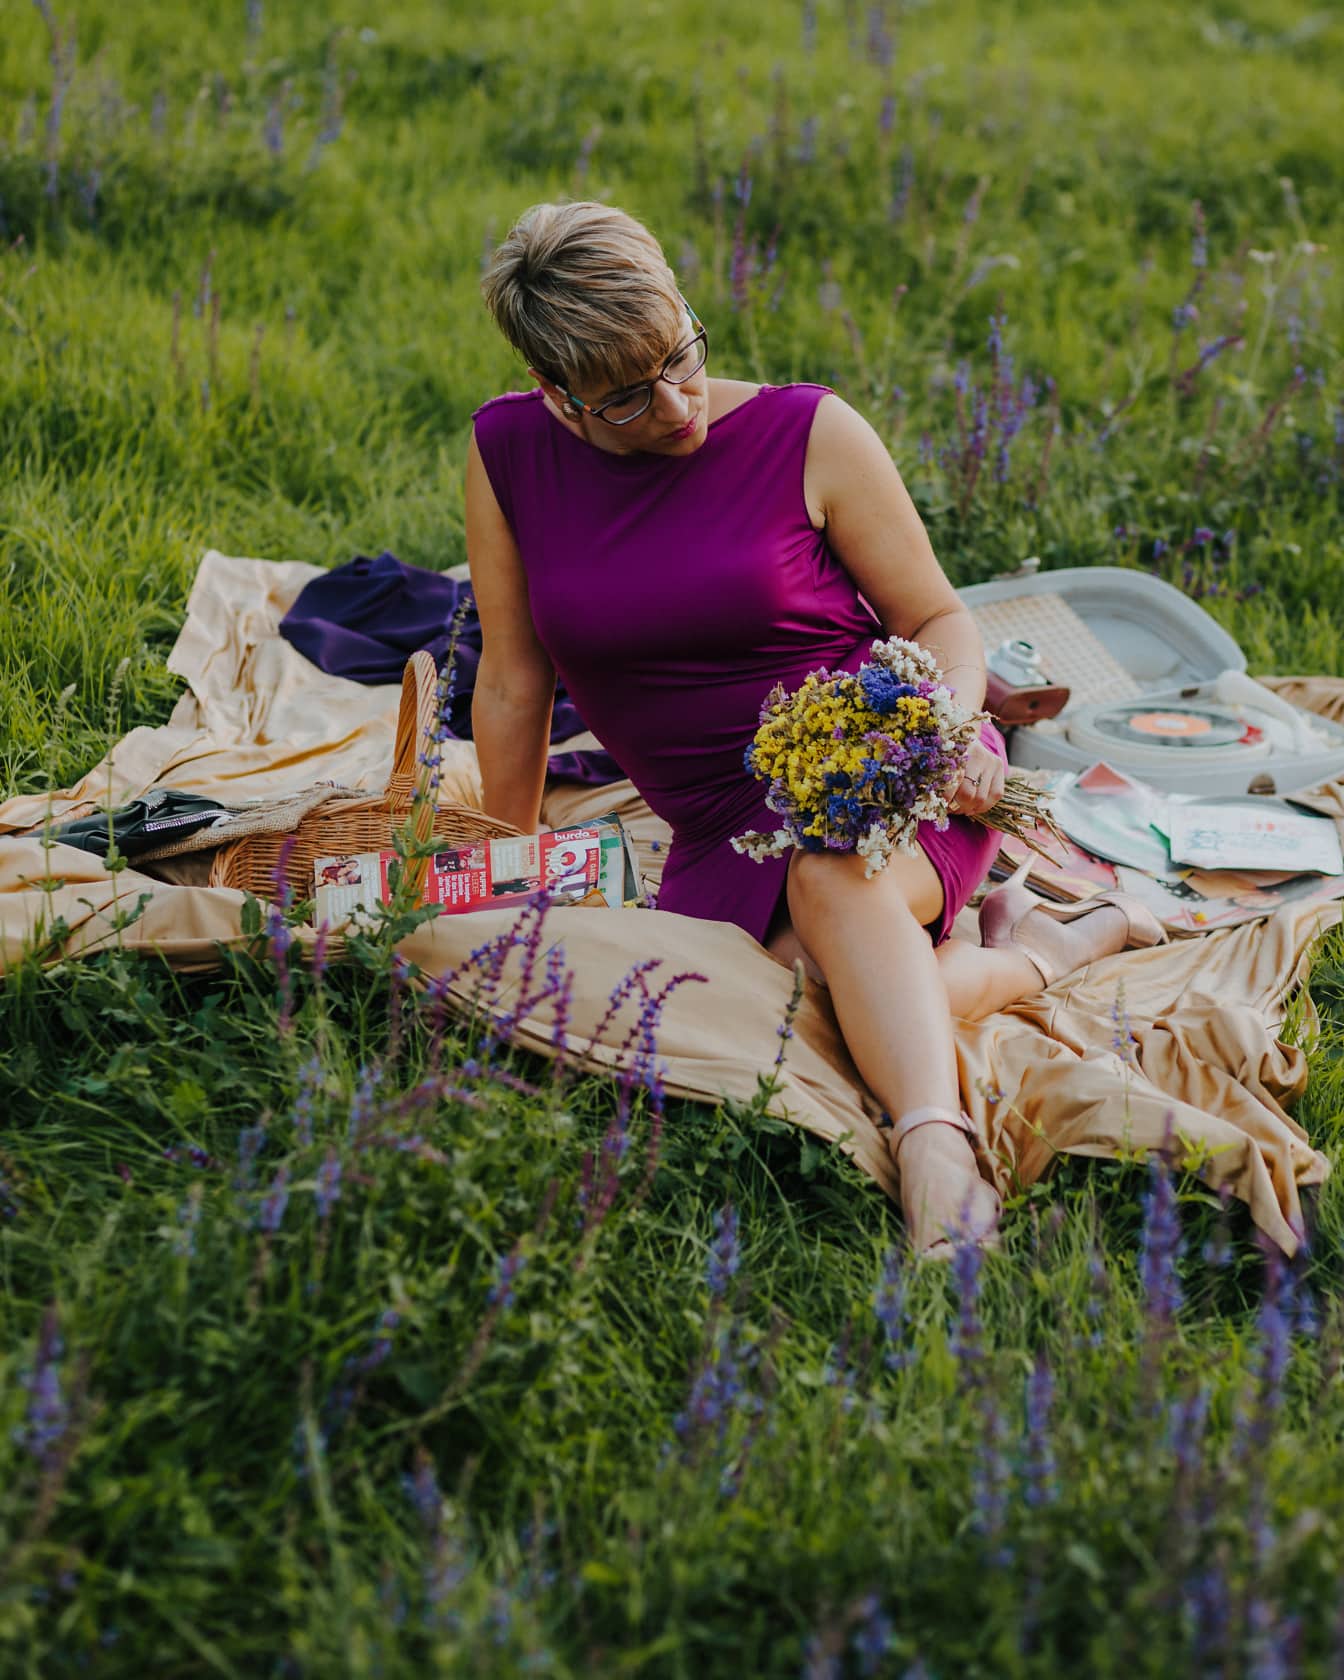 Wanita cantik menikmati piknik pedesaan dengan gaun ungu mewah